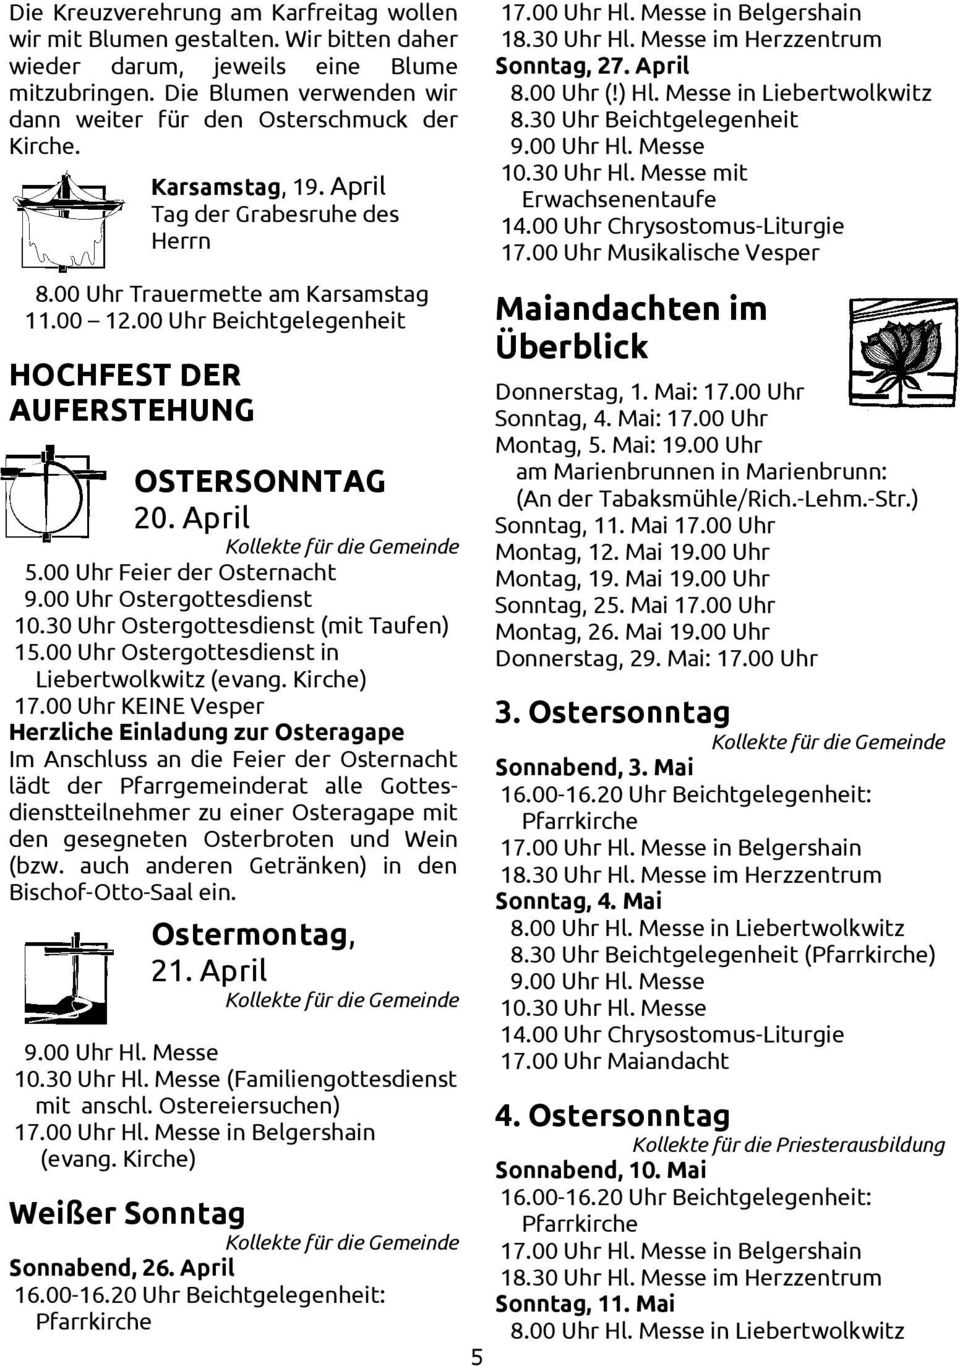 00 Uhr Feier der Osternacht 9.00 Uhr Ostergottesdienst 10.30 Uhr Ostergottesdienst (mit Taufen) 15.00 Uhr Ostergottesdienst in Liebertwolkwitz 17.